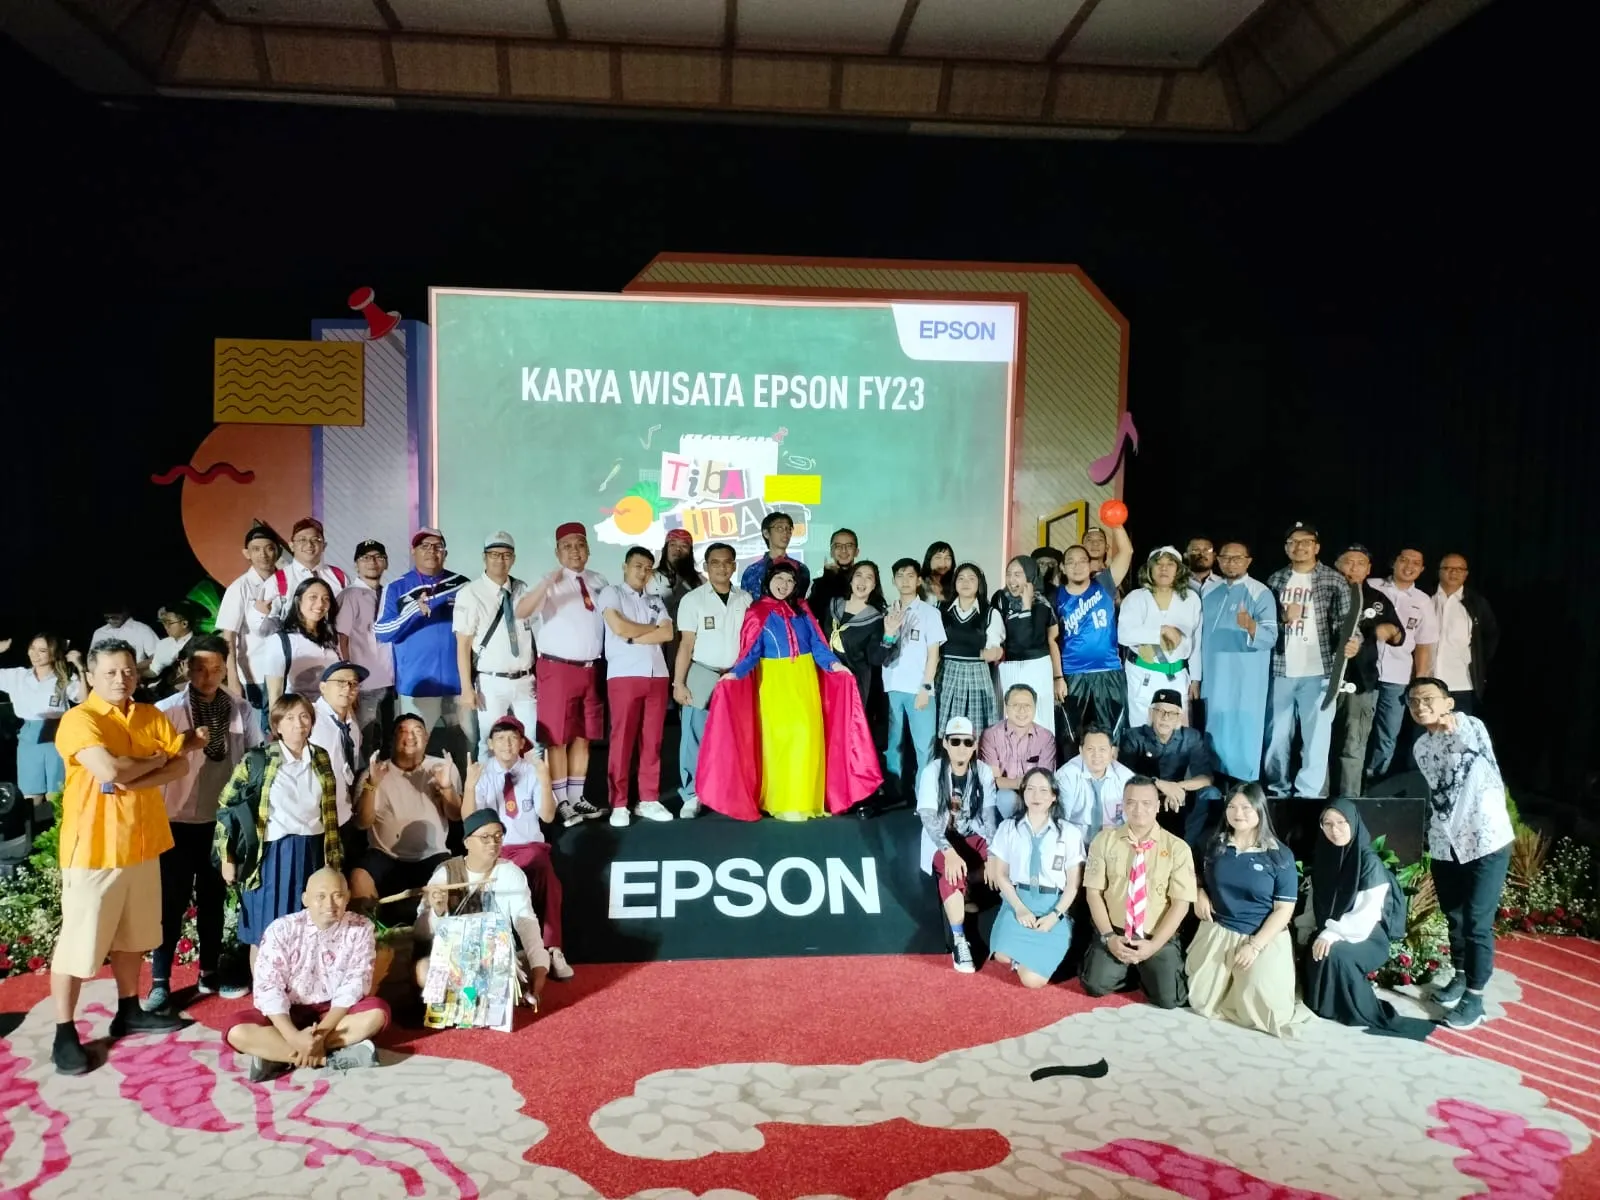 Serunya Media Gathering “Karya Wisata Epson FY23” di Kota Batu. Jawa Timur